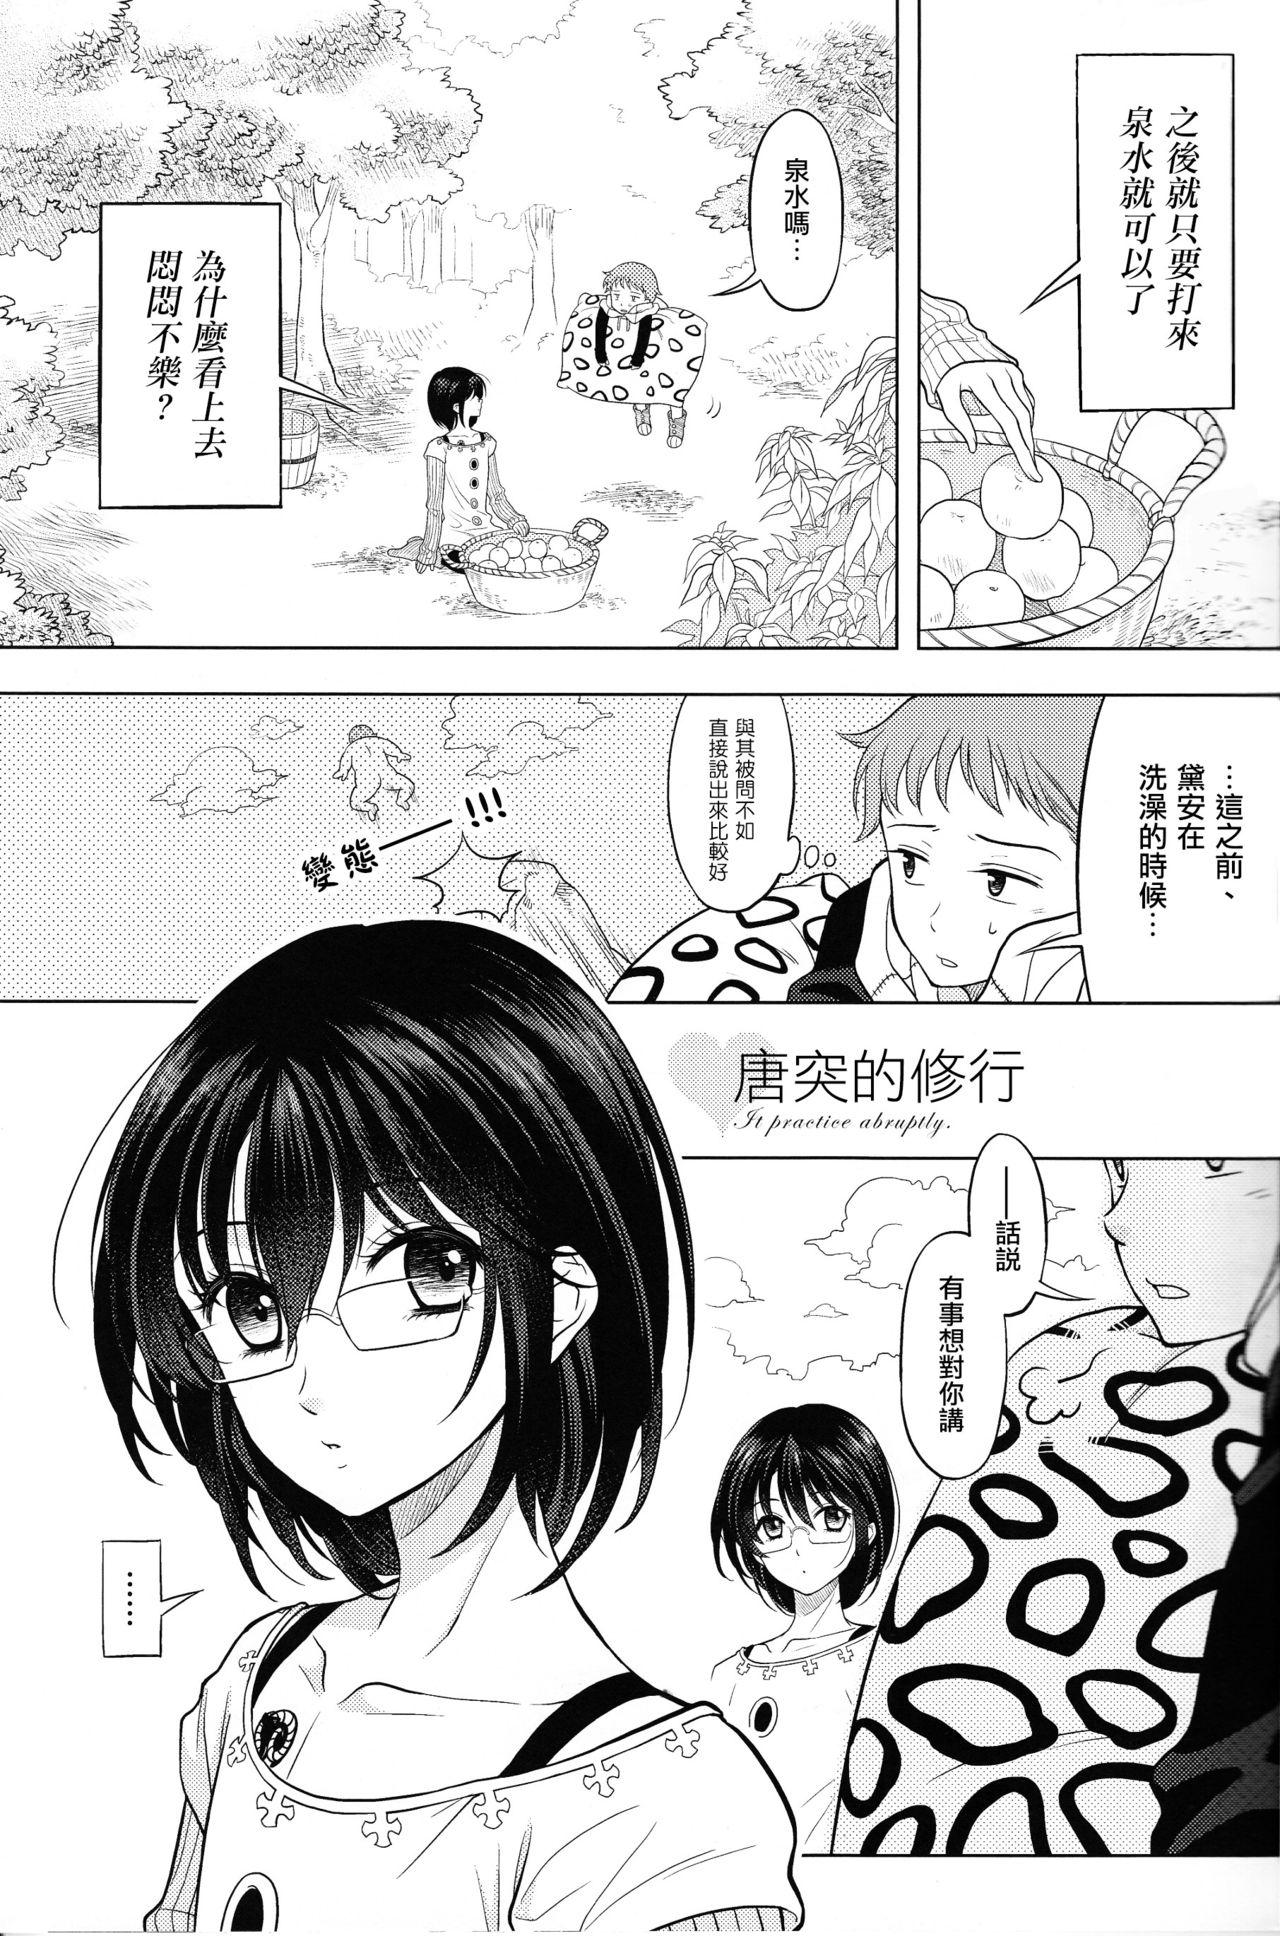 Milf Sex Shikiyoku, tsumibukashi - Lust is sinful - Nanatsu no taizai Asses - Page 4